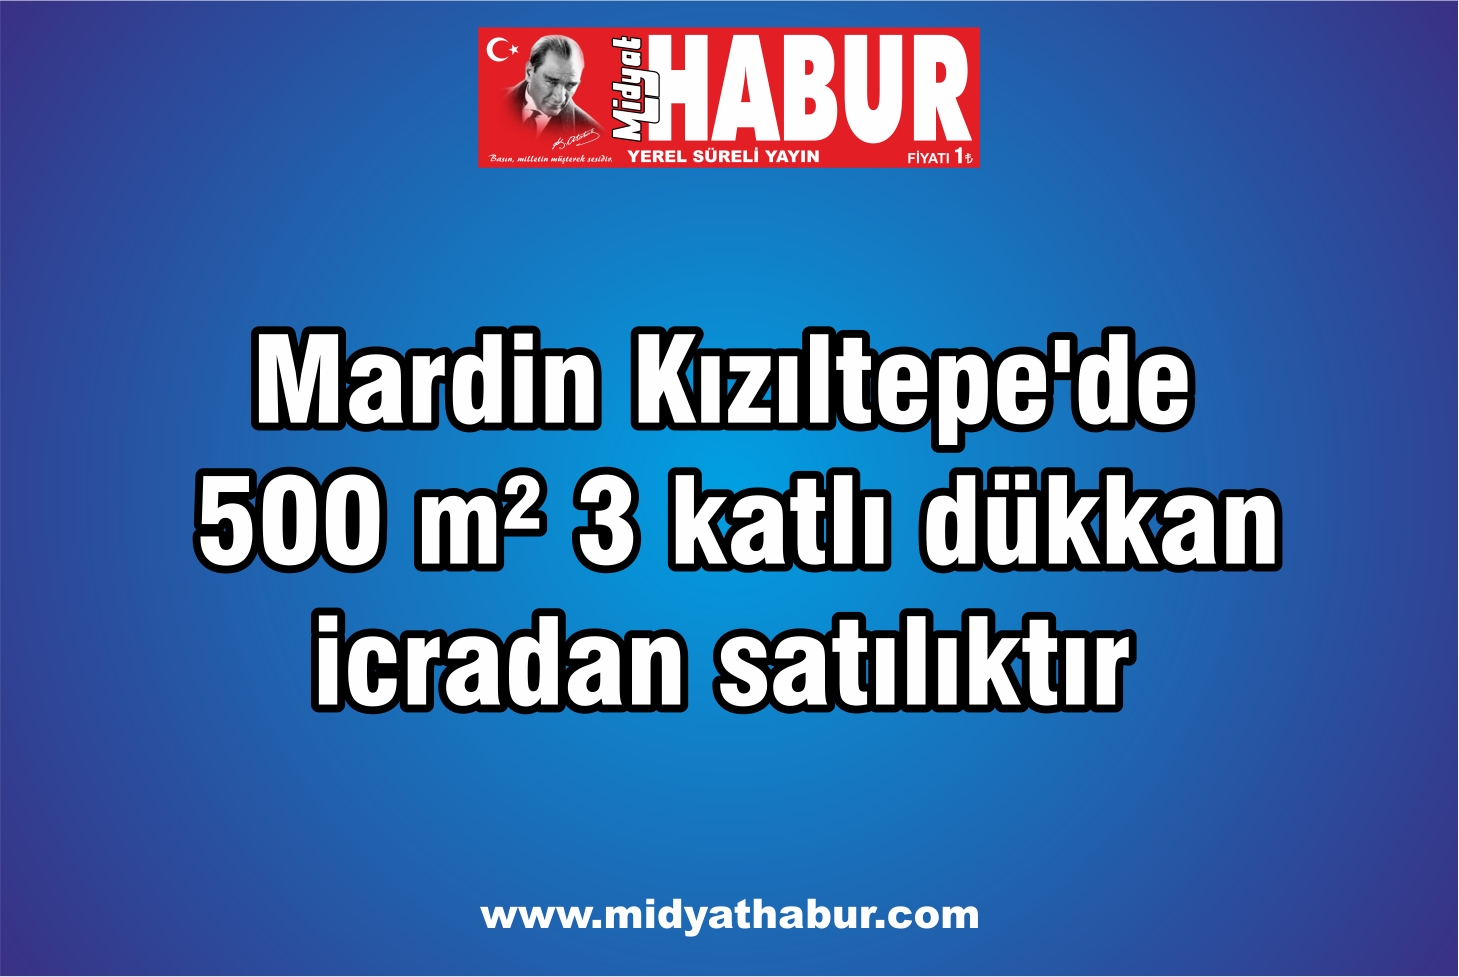 Mardin Kızıltepede 500 m² 3 katlı dükkan icradan satılıktır